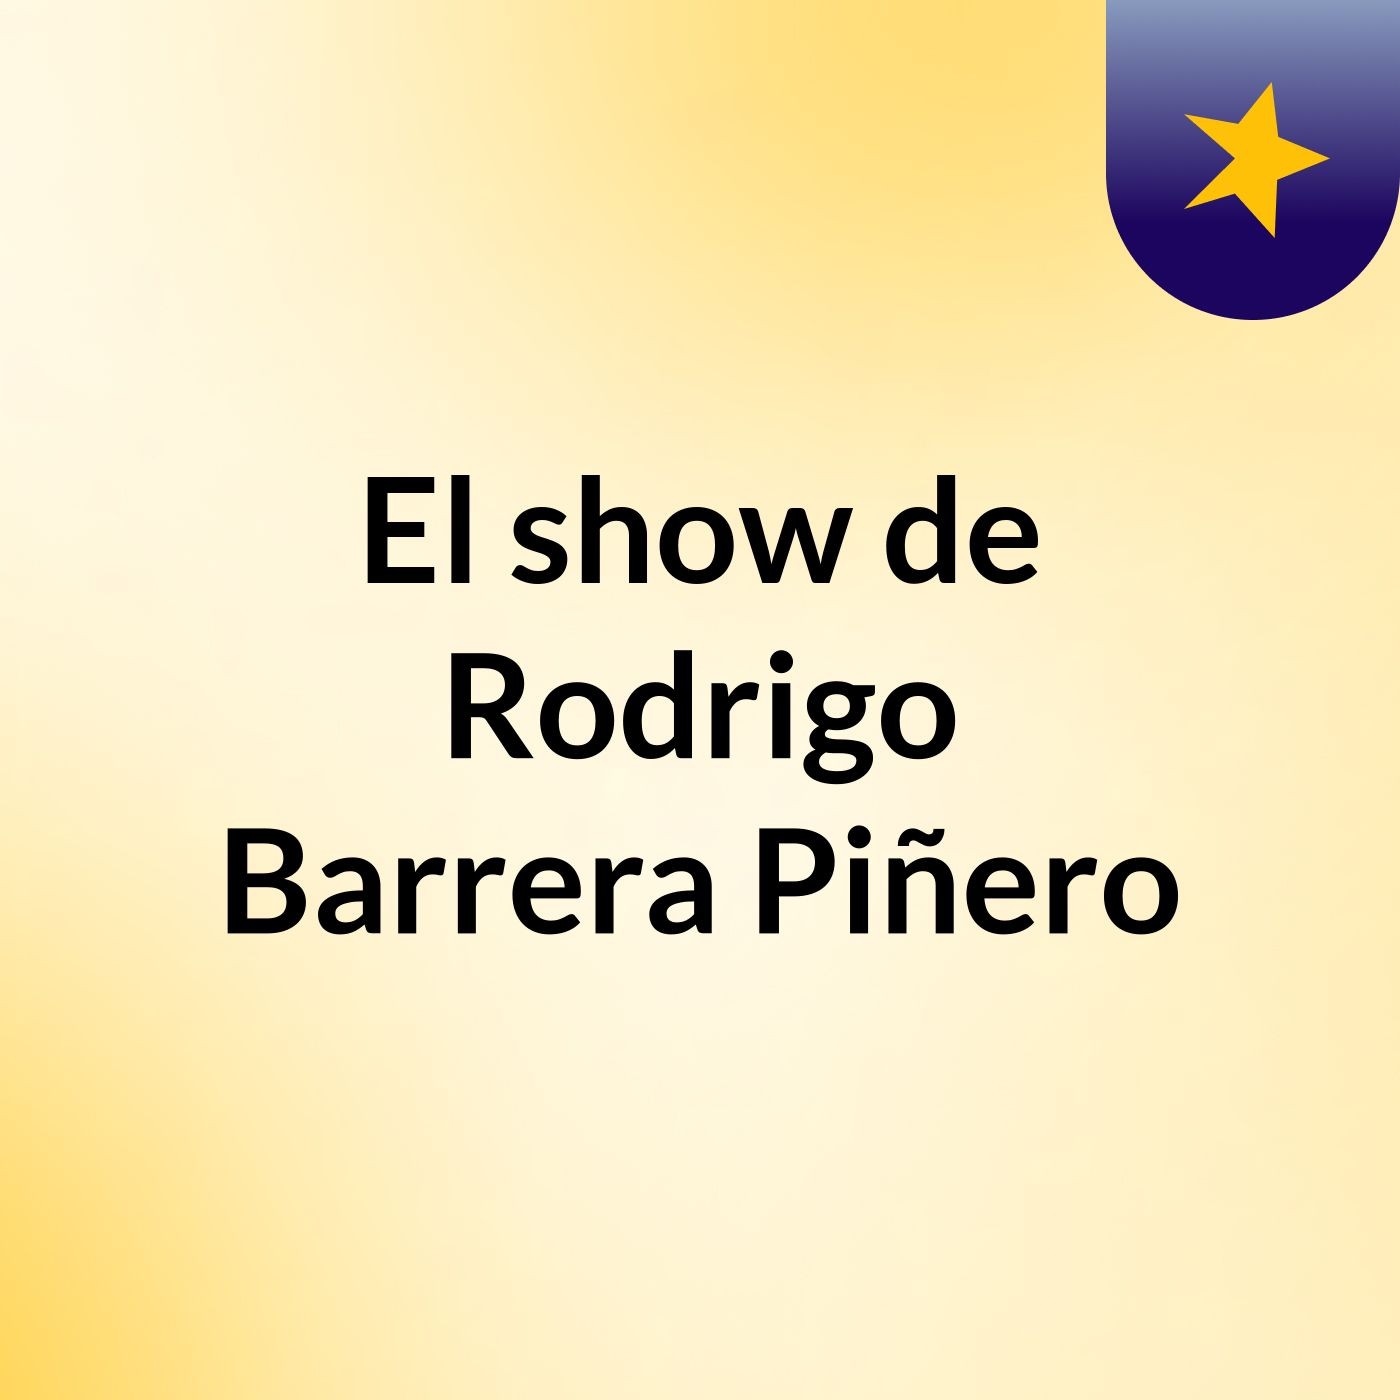 El show de Rodrigo Barrera Piñero